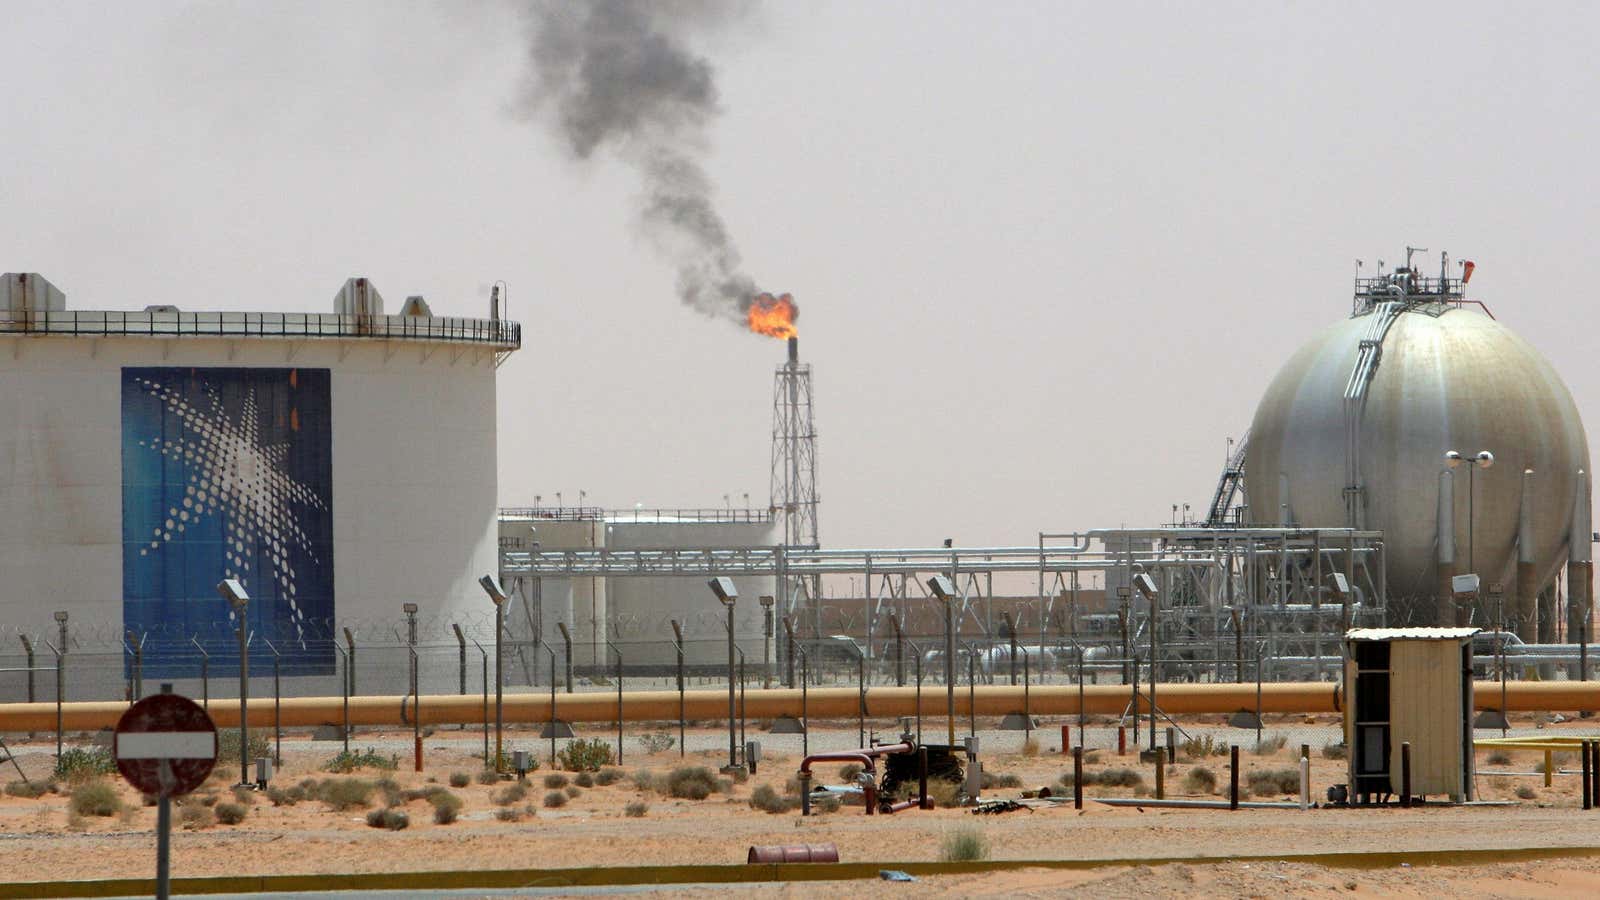 A gas flame is seen in the desert near the Khurais oilfield, Saudi Arabia.